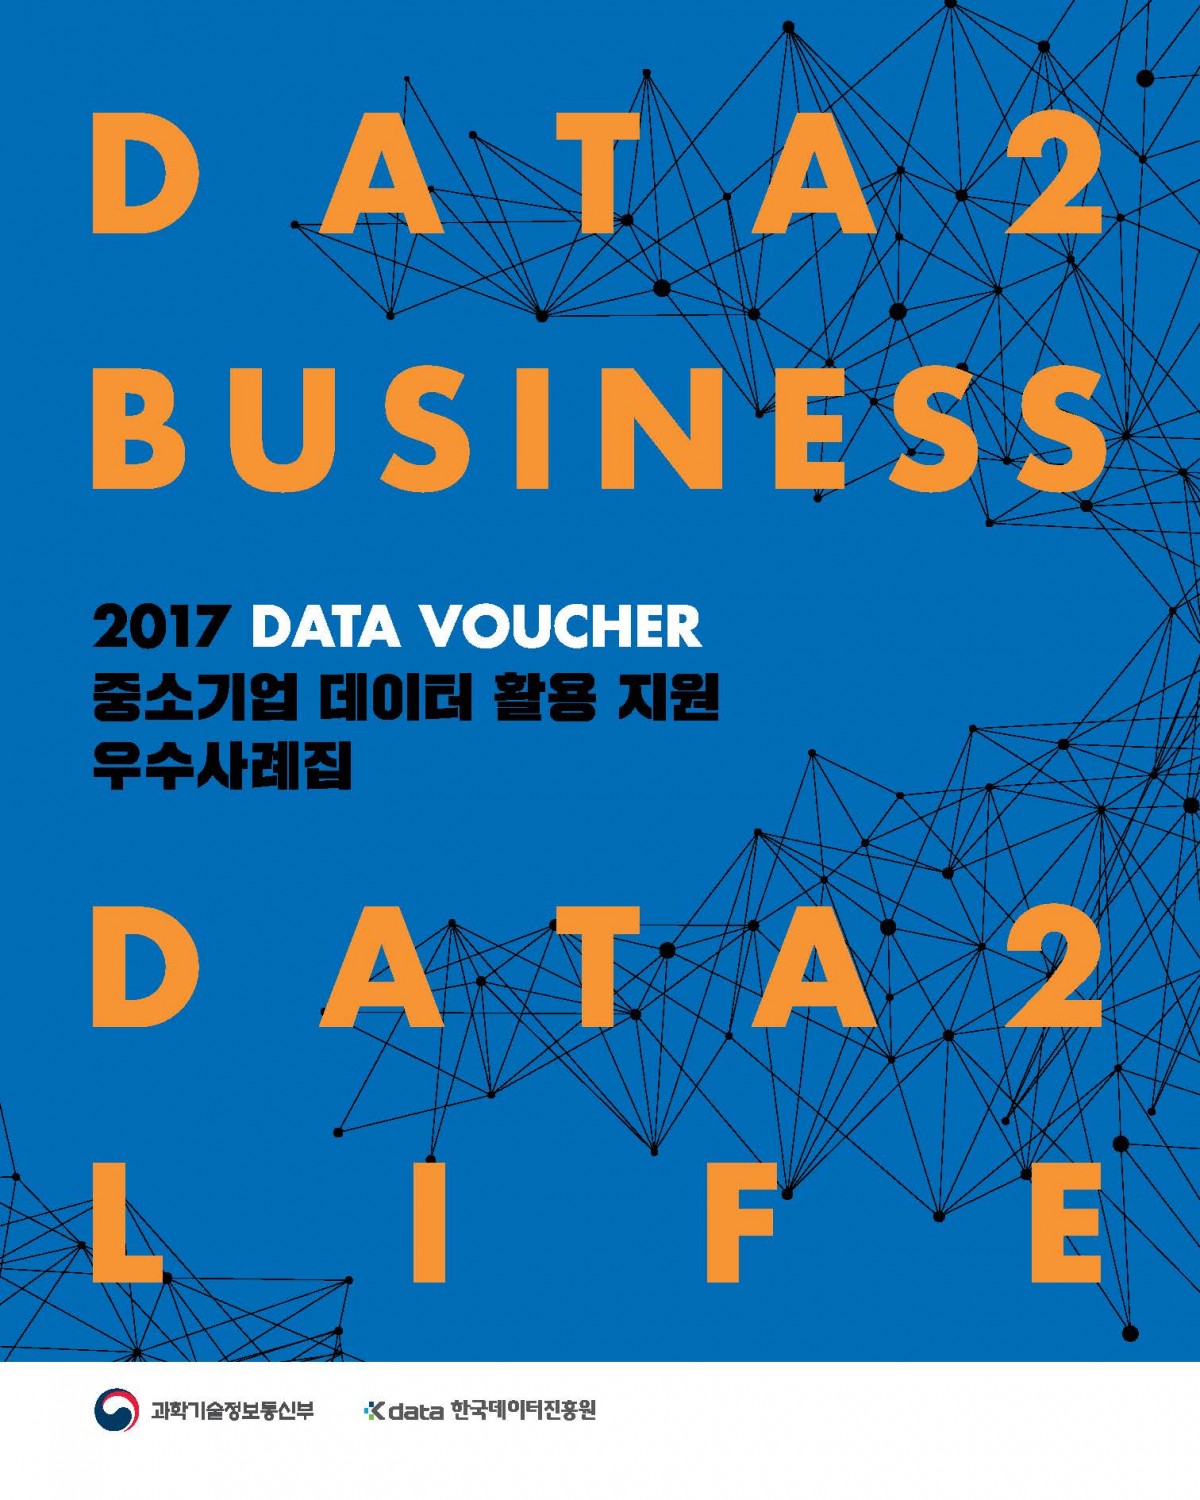 DATA 2 BUSINESS 2017 DATA VOUCHER 중소기업 데이터 활용 지원 우수 사례집 DATA 2 LIFE / 과학기술정보통신부, Kdata 한국데이터진흥원